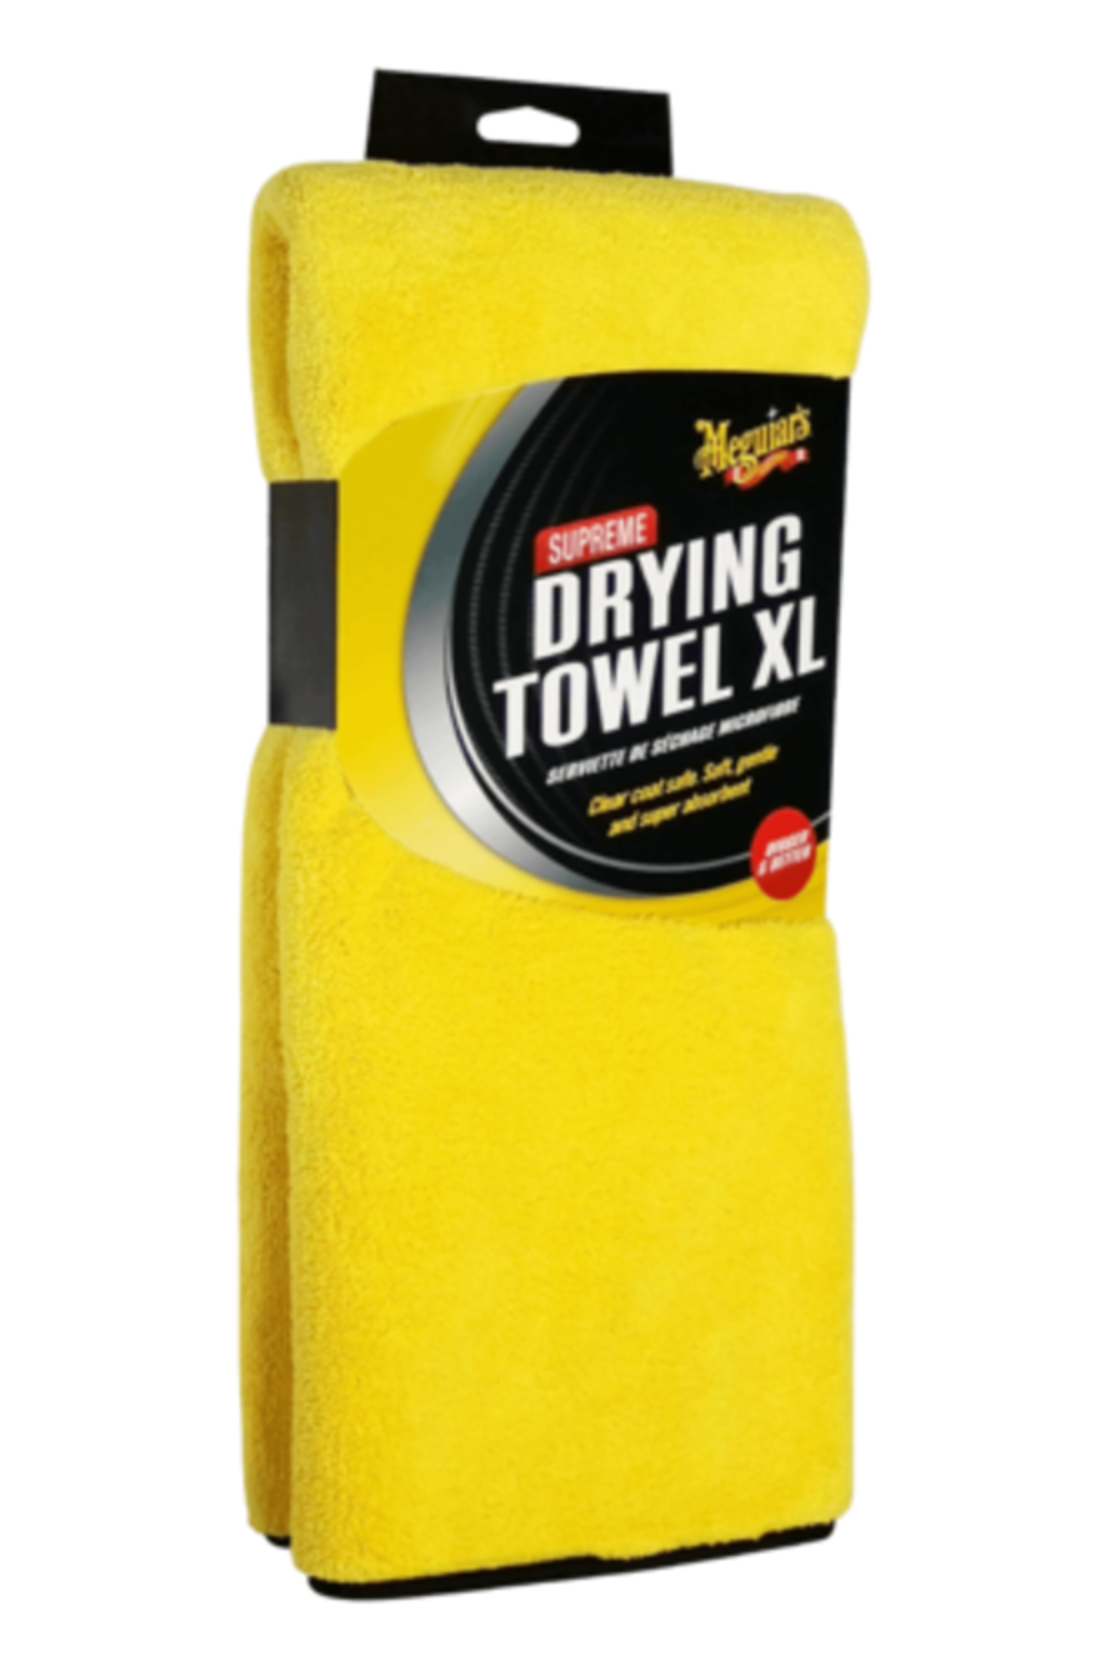 מגבת מיקרופייבר לייבוש Meguiar's Supreme Drying Towel XL